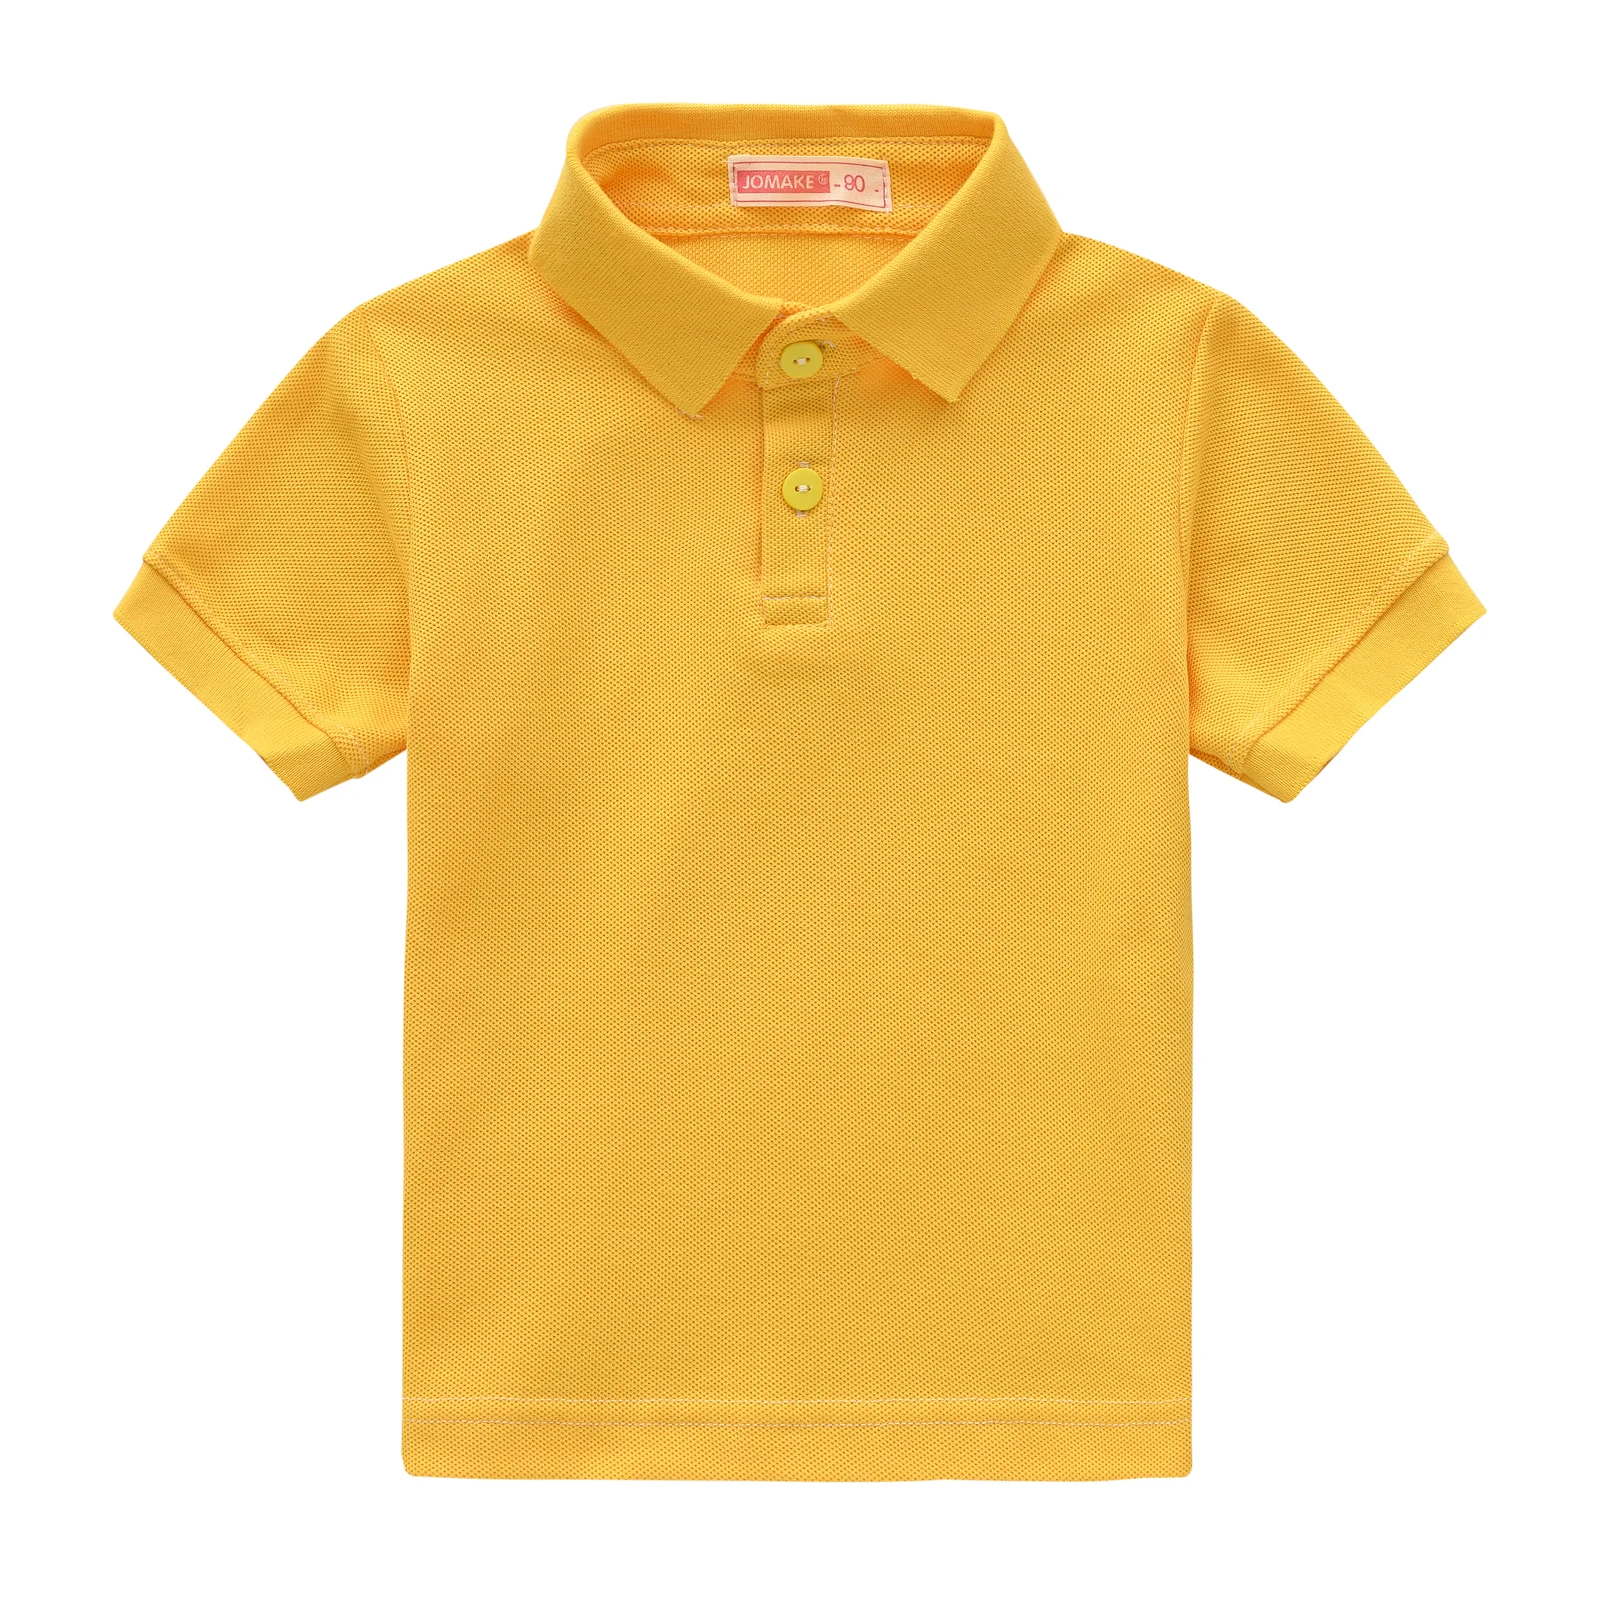 Ofertas Camisetas y Polos Niño amarillo - Mejor Precio Online